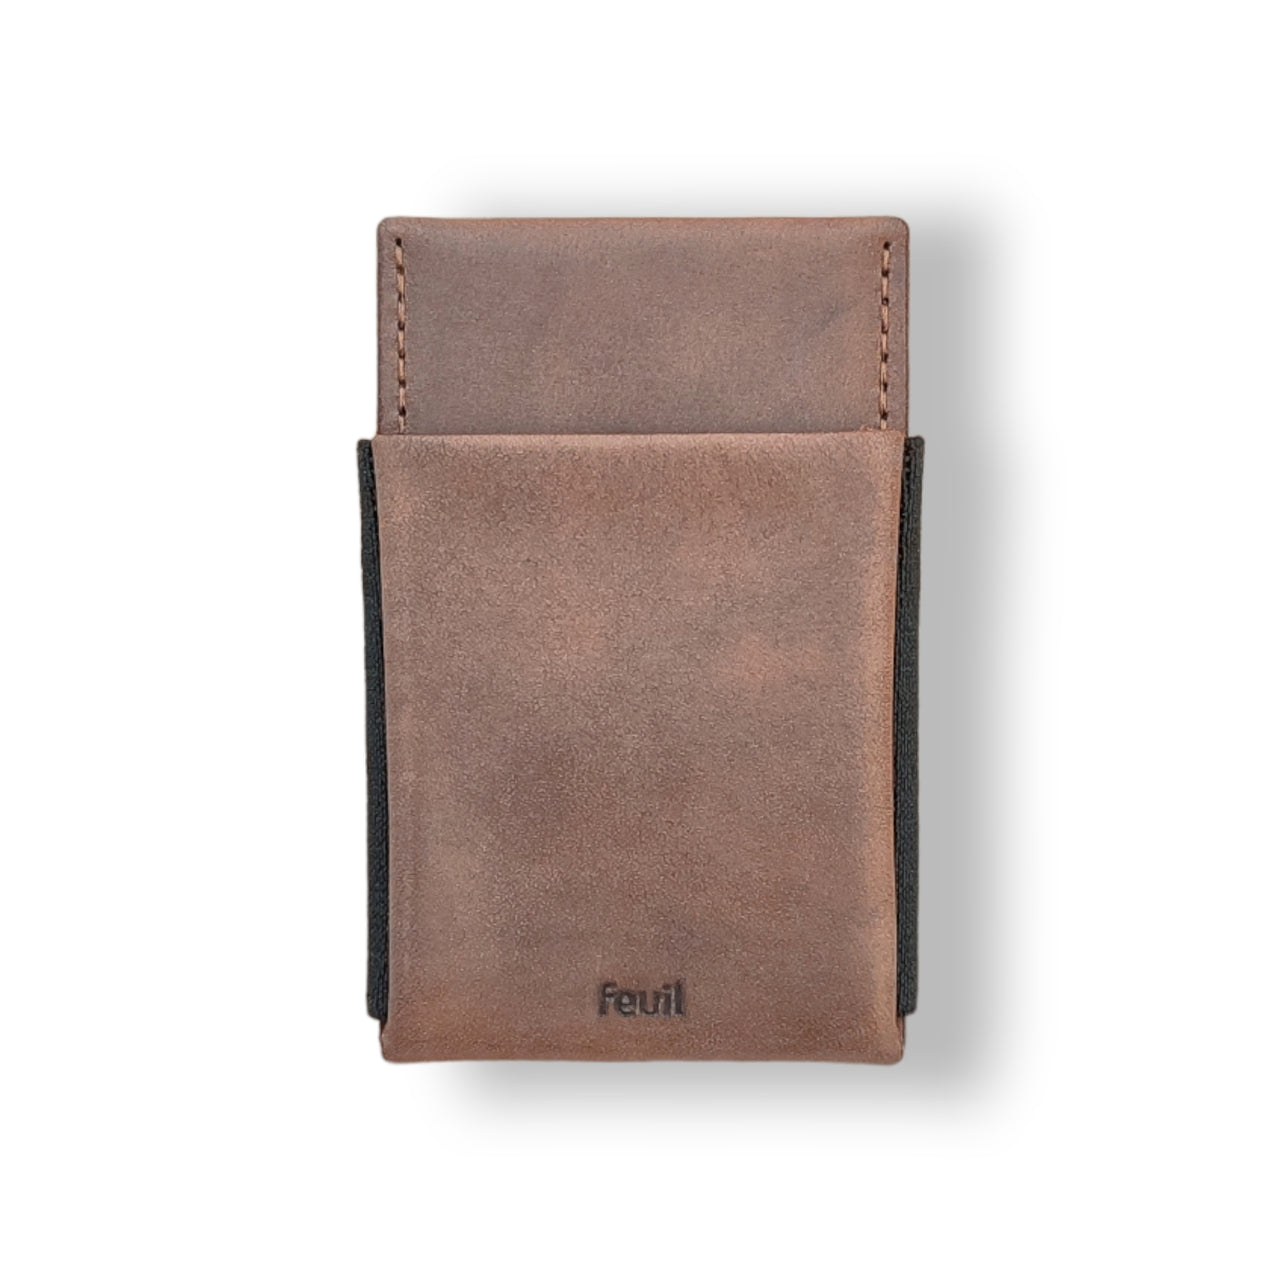 Wallet Portemonnaie Geldbörse mit RFID Schutz | Leder Farbe piombo Dunkelbraun | mit Münzfach und Geldscheine - feuil wallets | accessories